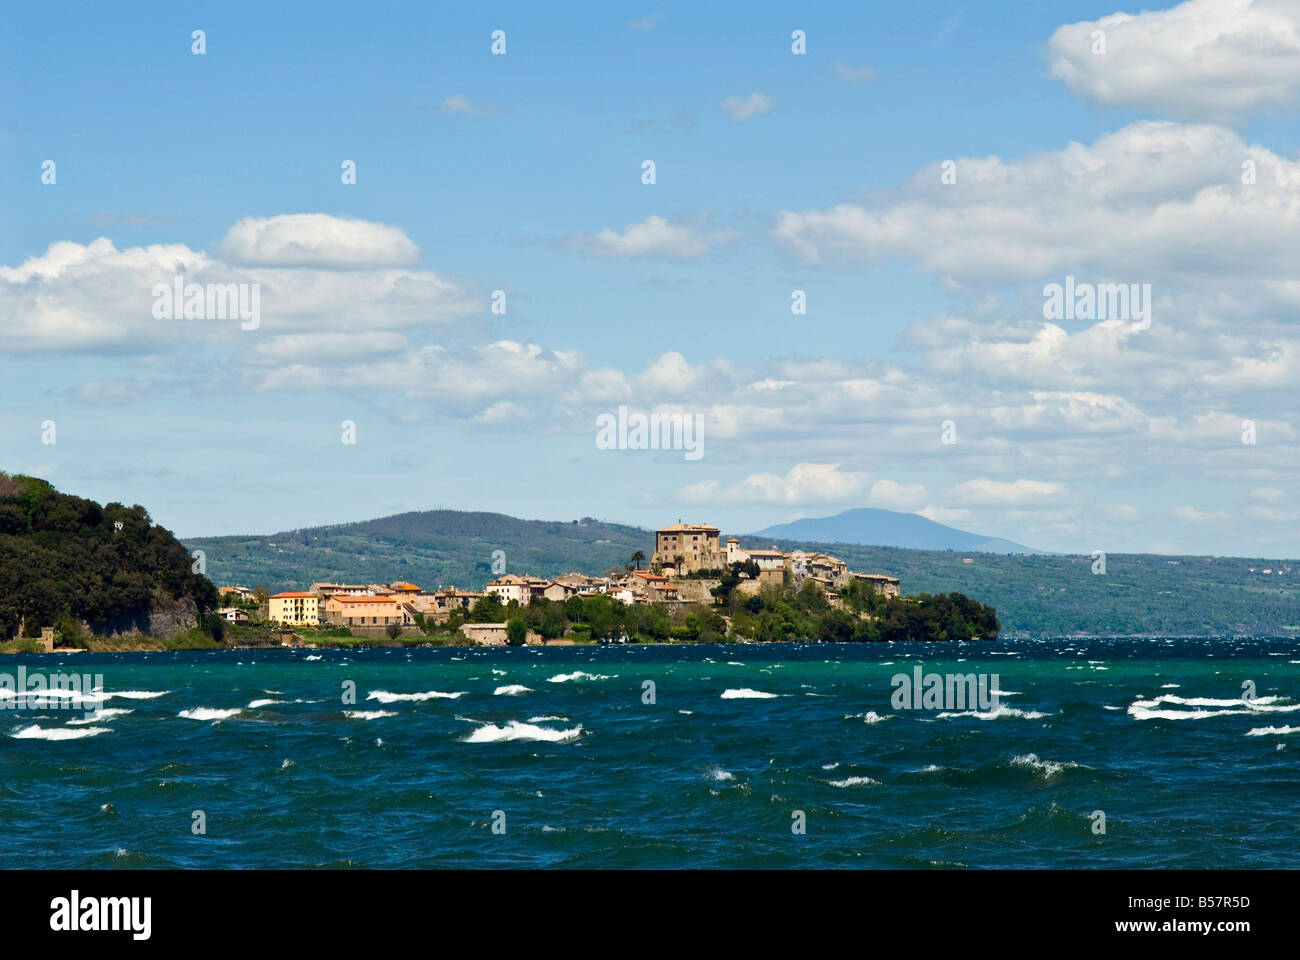 Capodimonte, Lake of Bolsena, Viterbo, Lazio, Italy, Europe Stock Photo